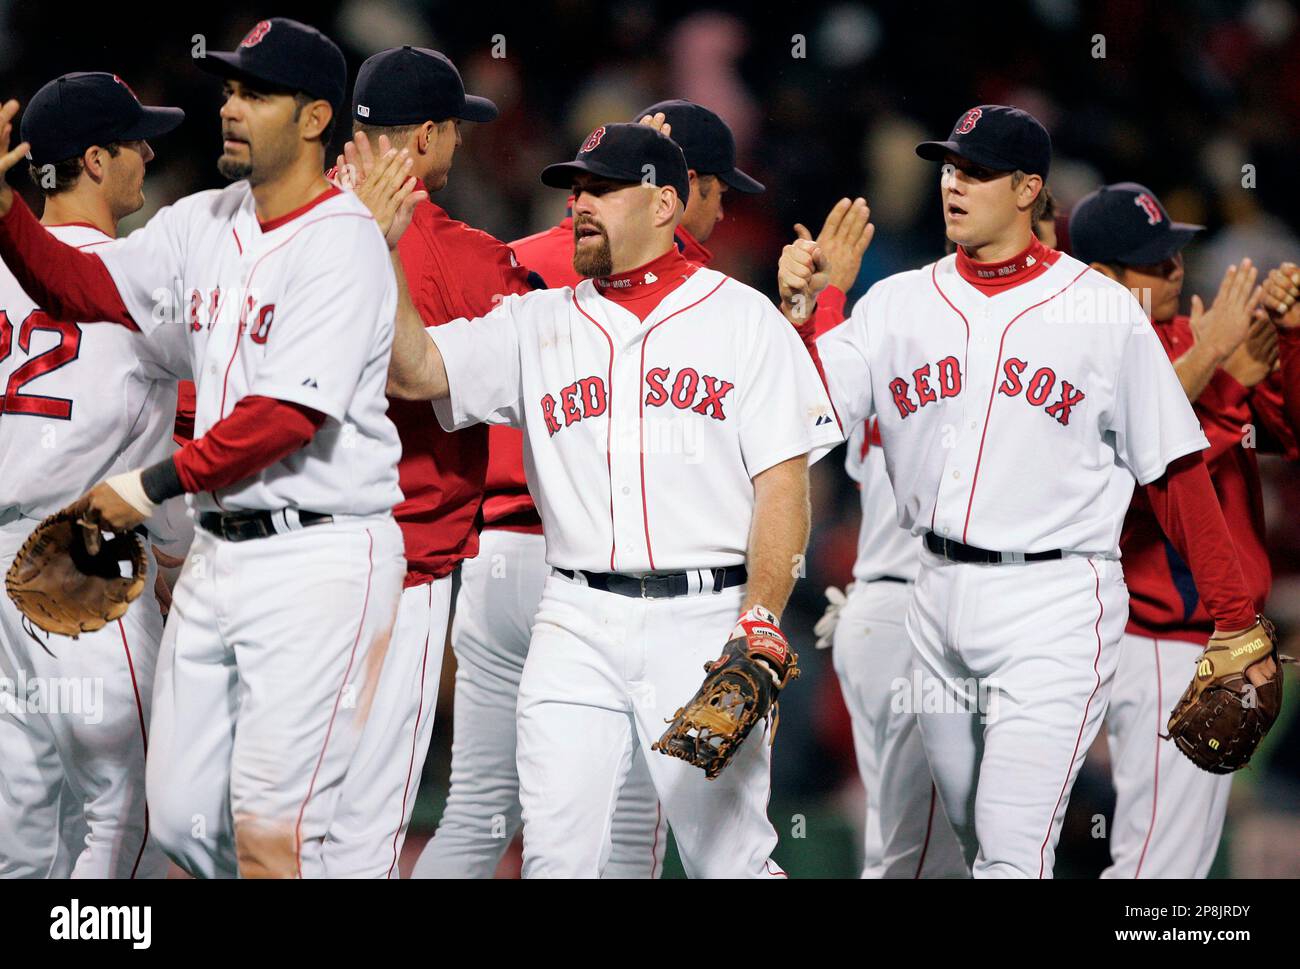 2009 Kevin Youkilis Game Worn Boston Red Sox Jersey.  Baseball